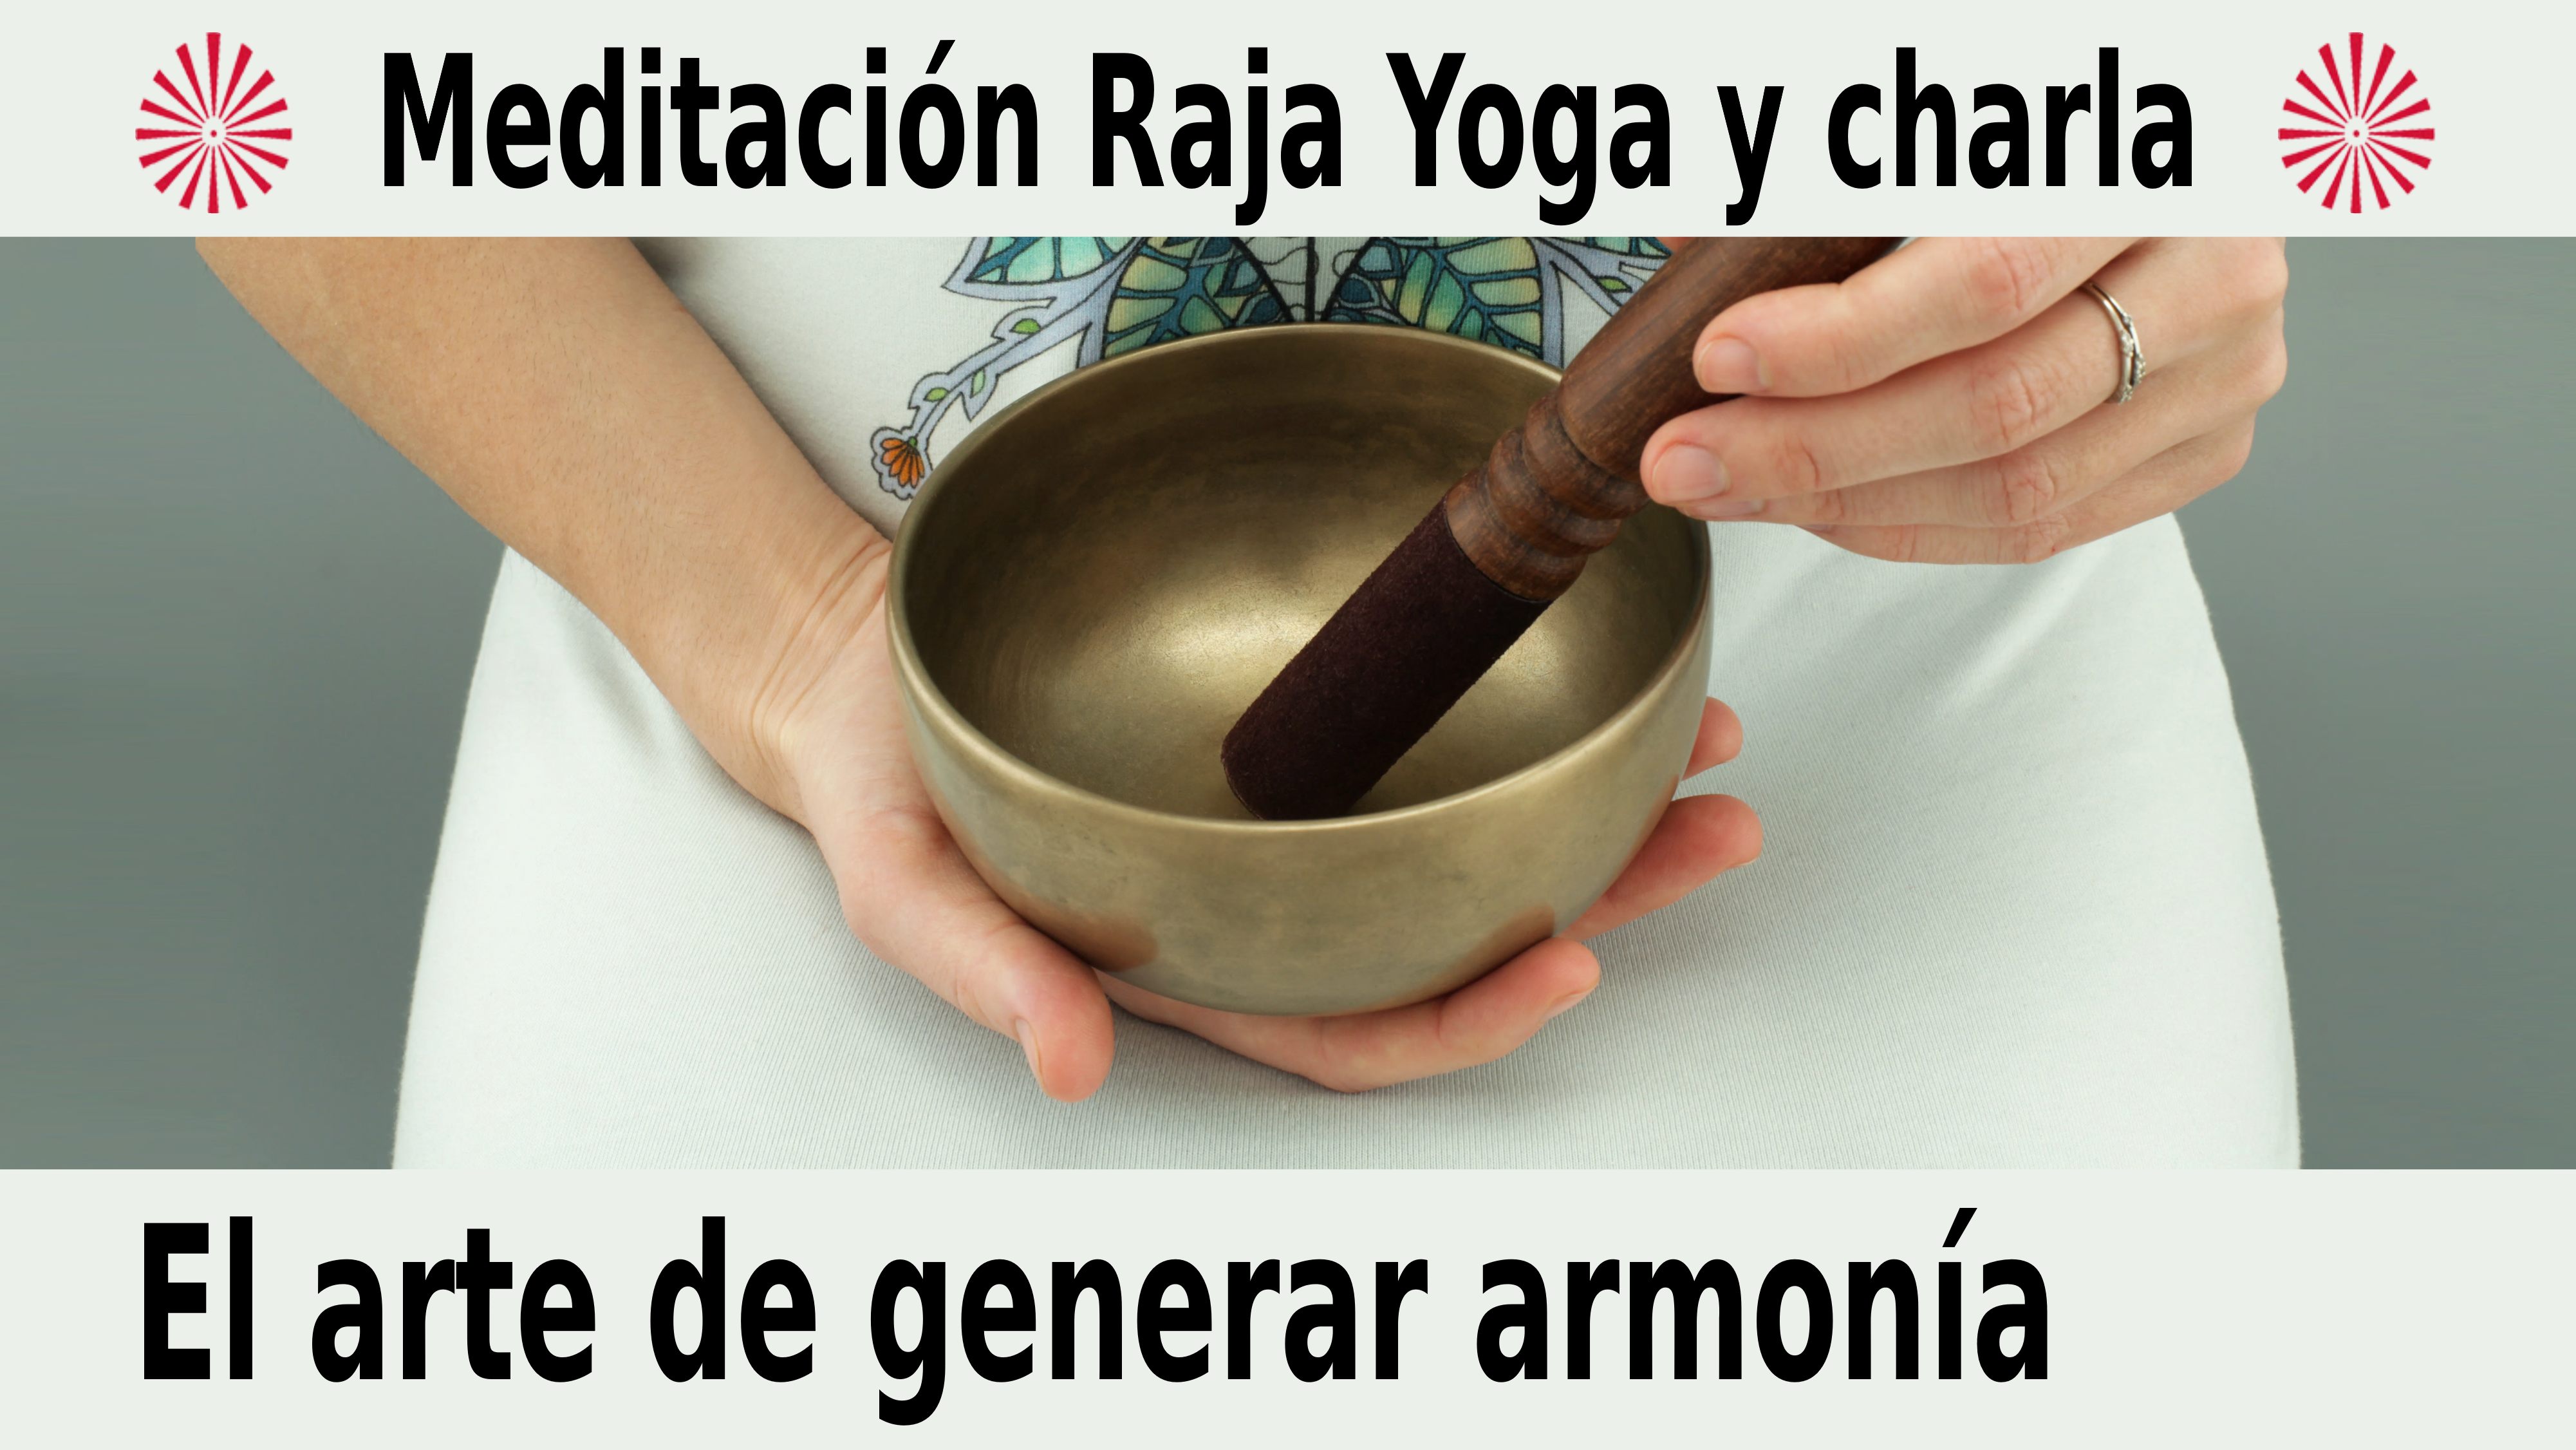 Meditación Raja Yoga y charla: El arte de generar armonía (8 Diciembre 2020) On-line desde Madrid